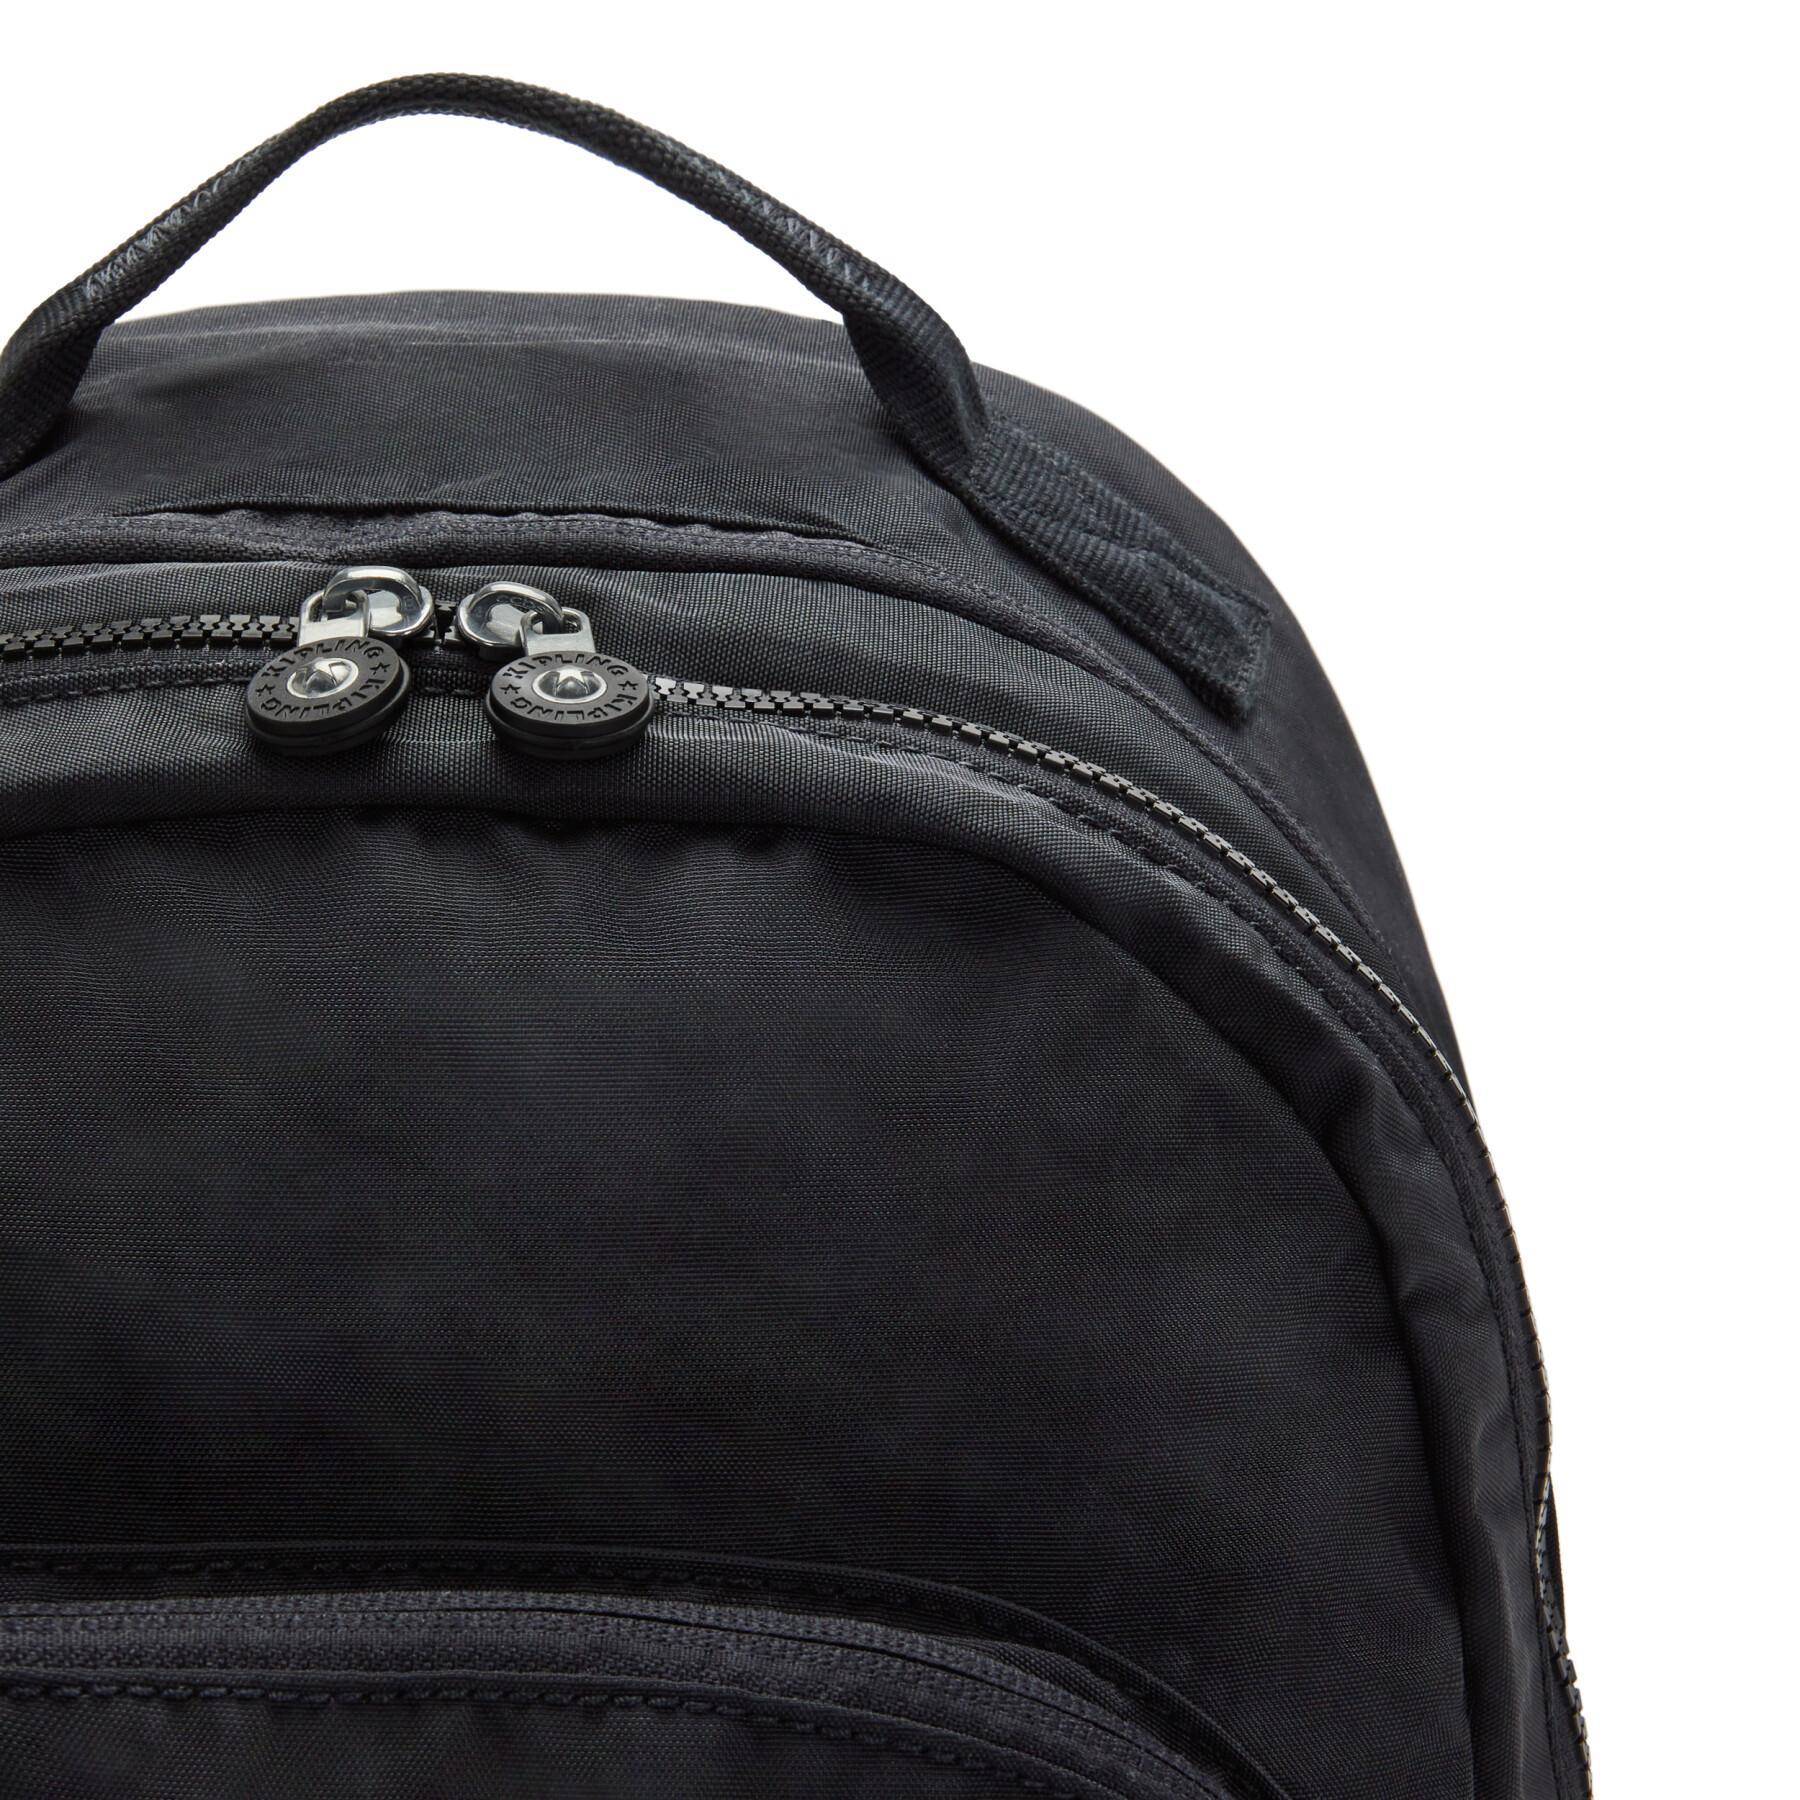 Backpack Kipling Curtis XL Cen Black Lite